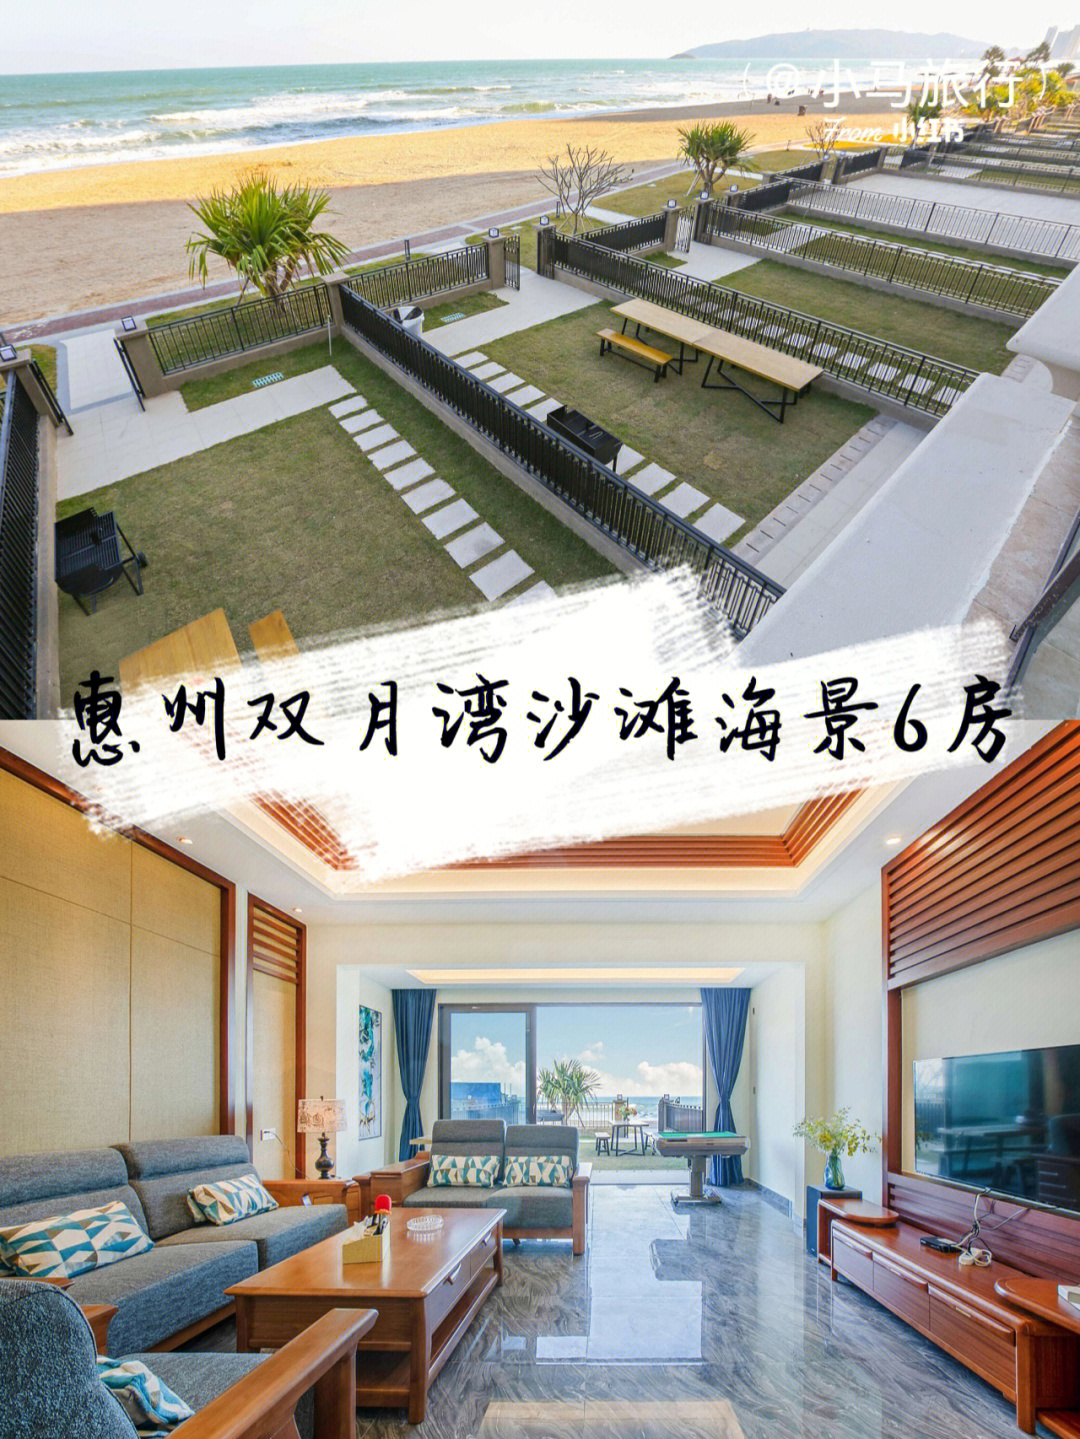 惠州双月湾沙滩海景6房别墅推荐一步到沙滩